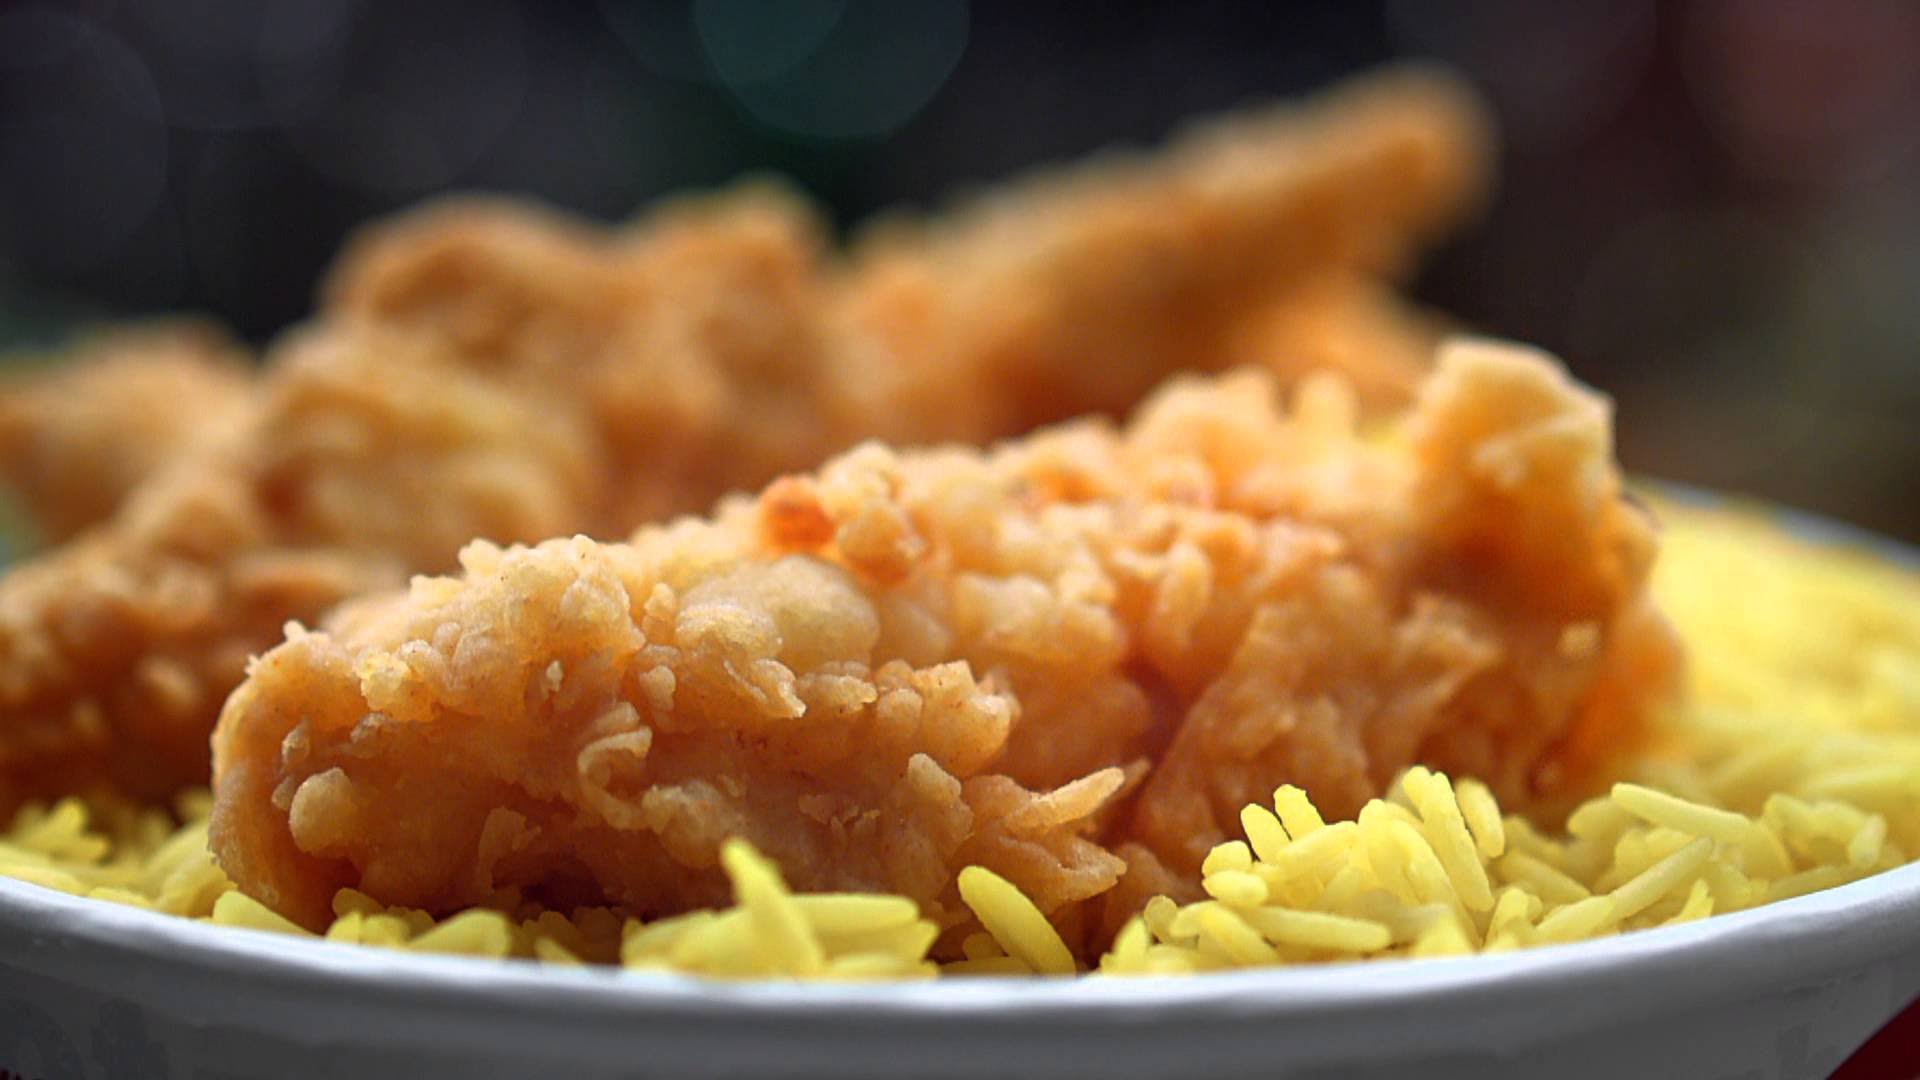 كنتاكي في البيت طريقة عمل الدجاج والأرز الريزو بالخلطة السرية بكل سهولة مثل المطاعم